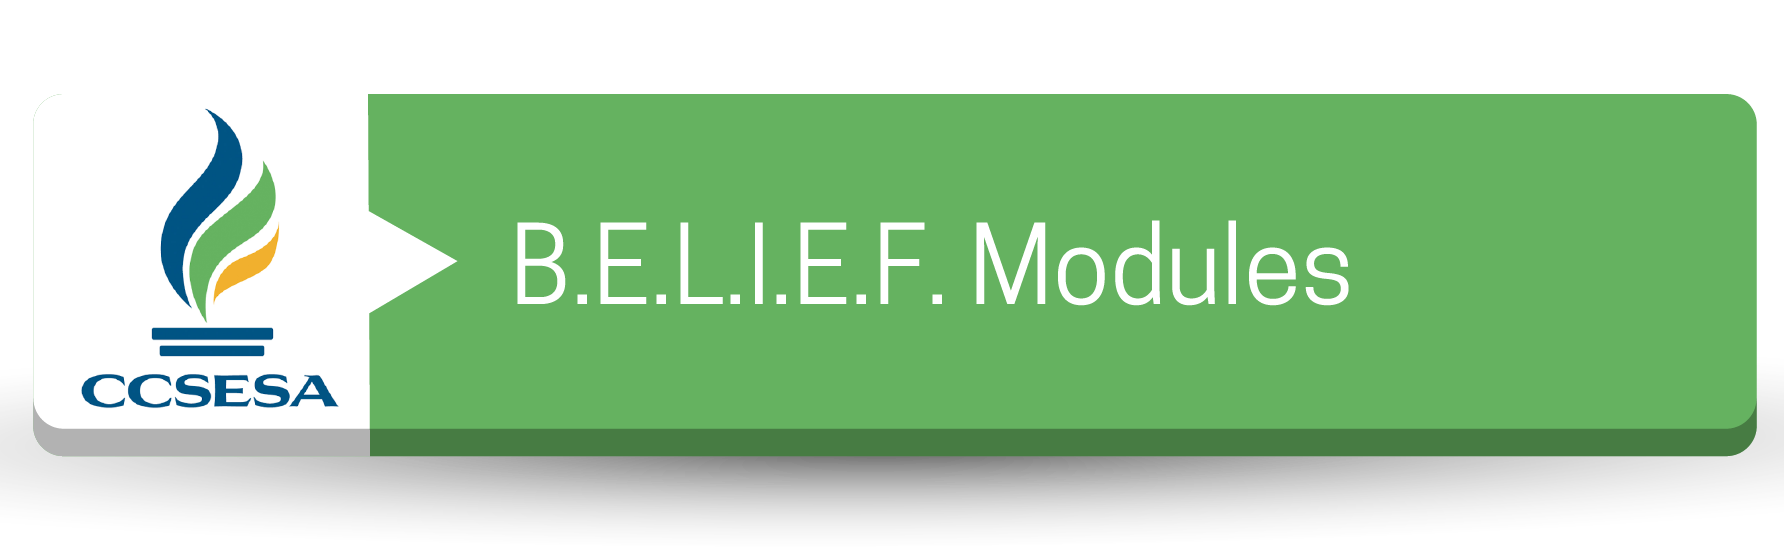 B.E.L.I.E.F. Modules Button